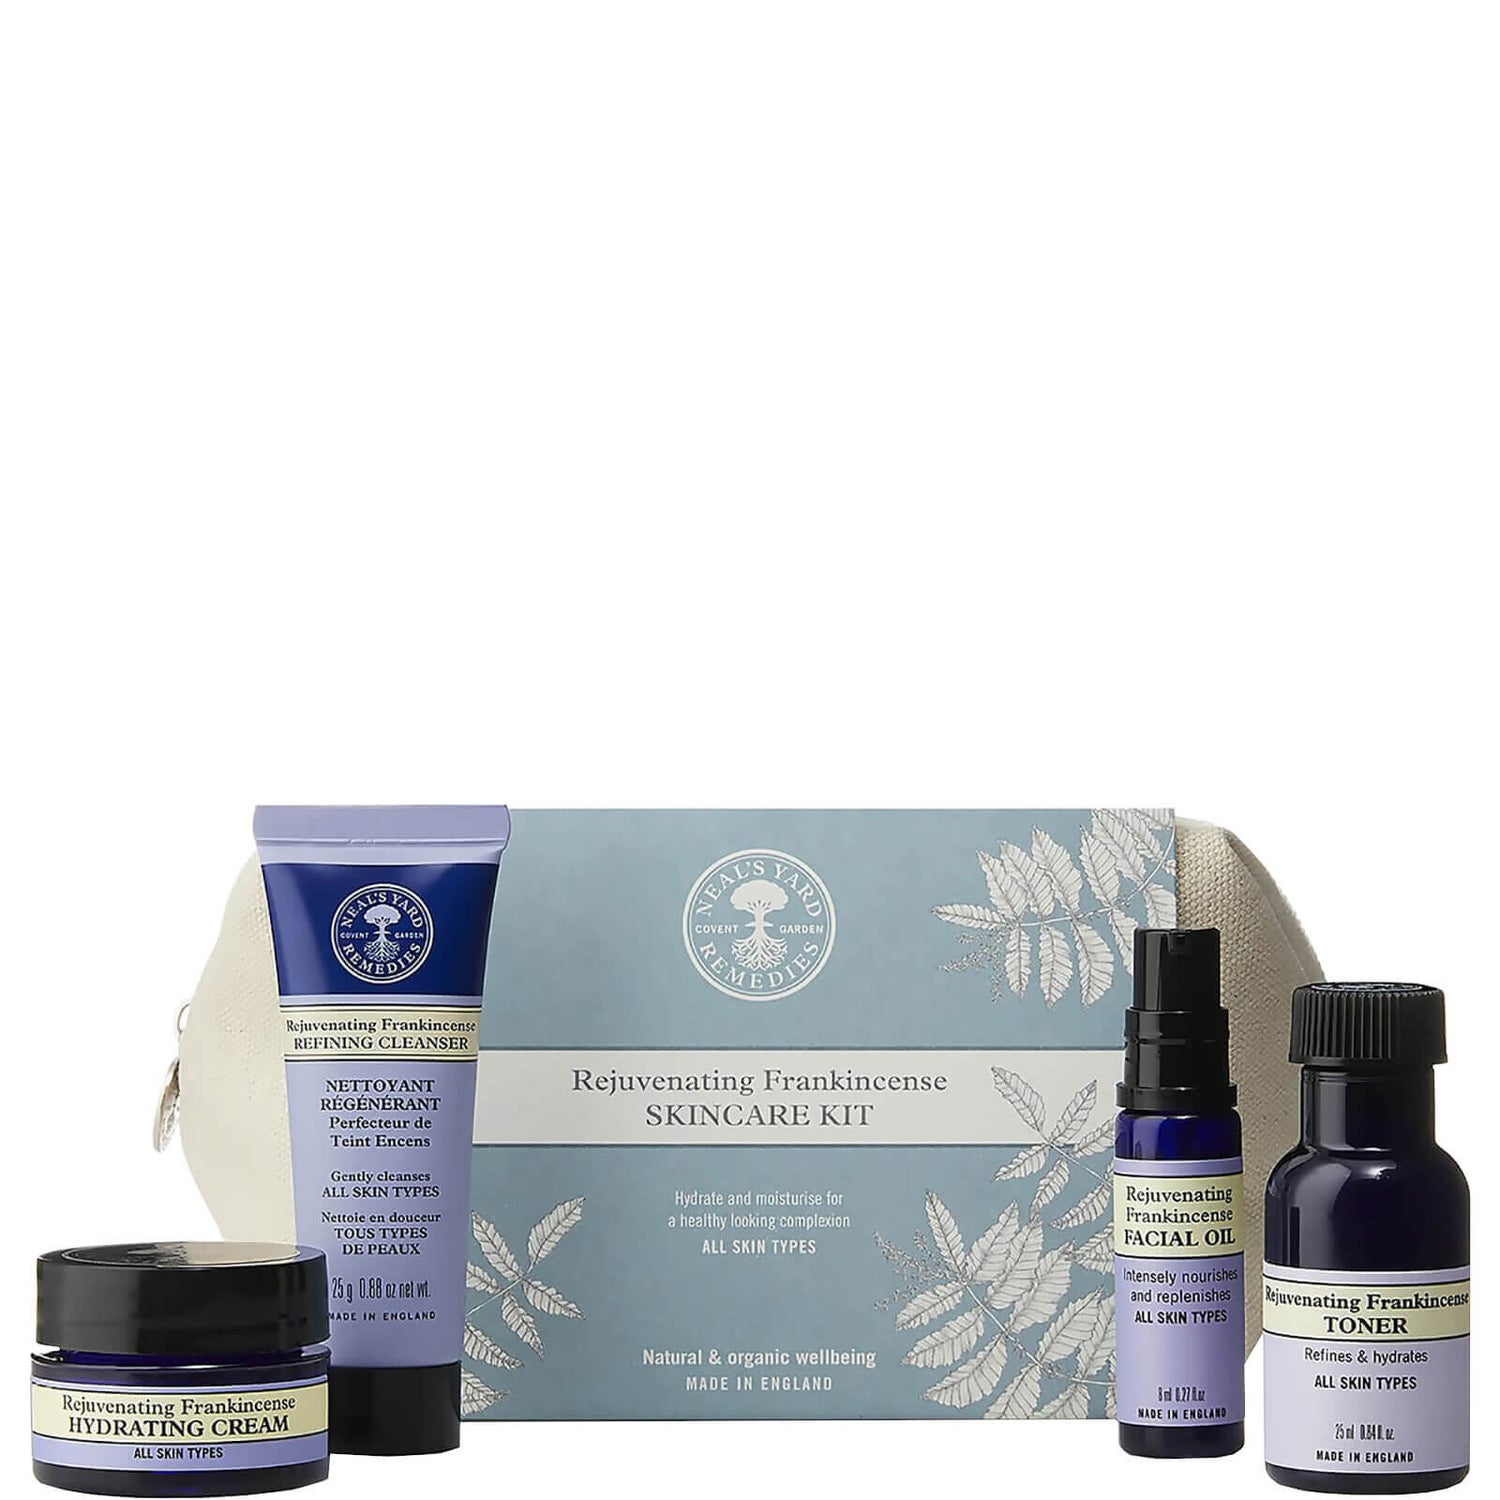 Rejuvenating Frankincense Skincare Kit